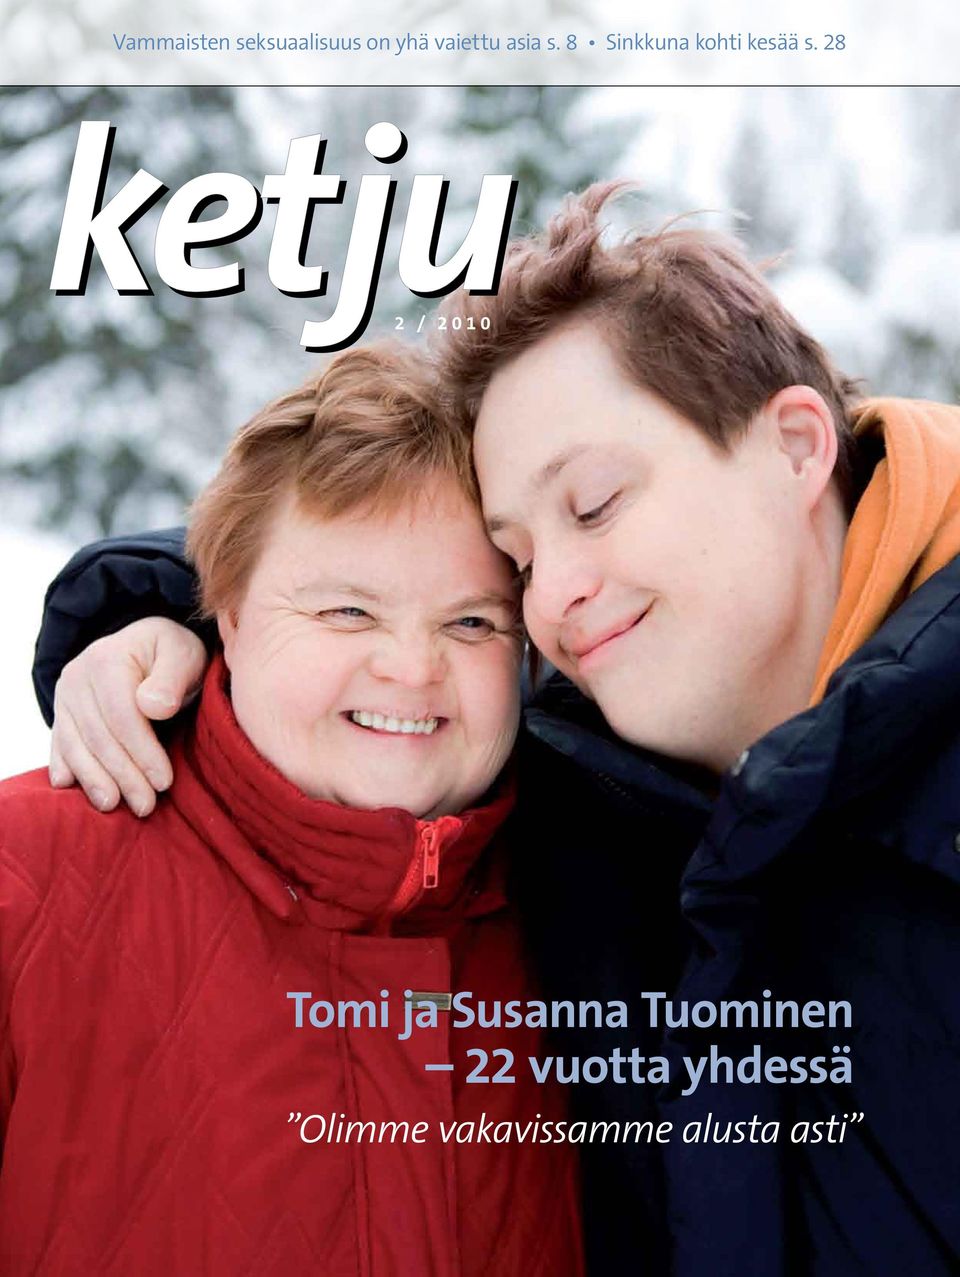 28 2 / 2010 Tomi ja Susanna Tuominen 22